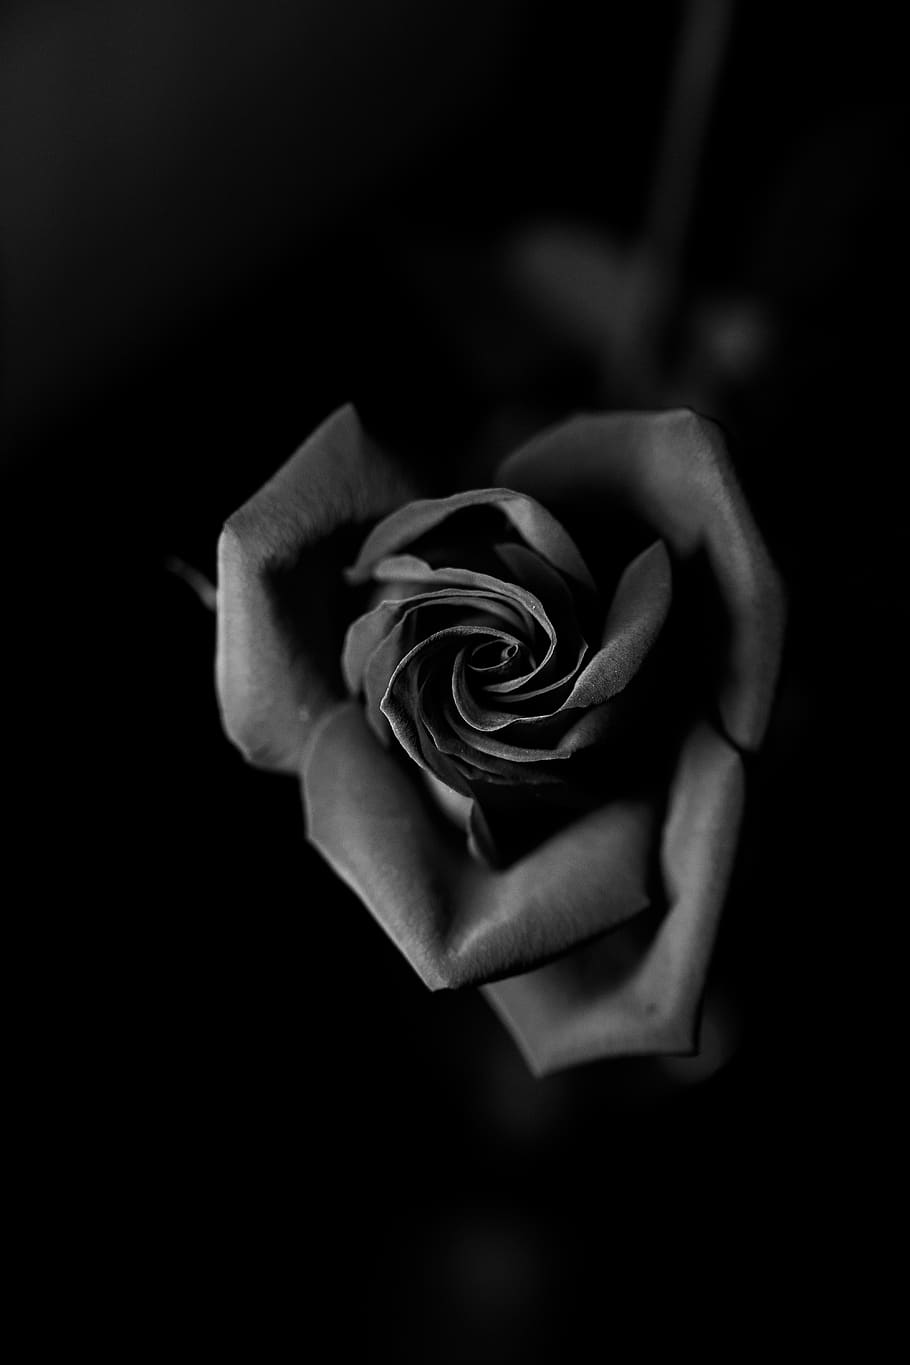 Nếu bạn là một người yêu hoa hồng, hãy cùng xem những hình ảnh đẹp của chúng tôi. Khám phá những loài hoa hồng khác nhau với màu sắc và hình dáng độc đáo của chúng. Bạn sẽ bị hấp dẫn bởi sự quyến rũ của hoa hồng trong hình ảnh này.